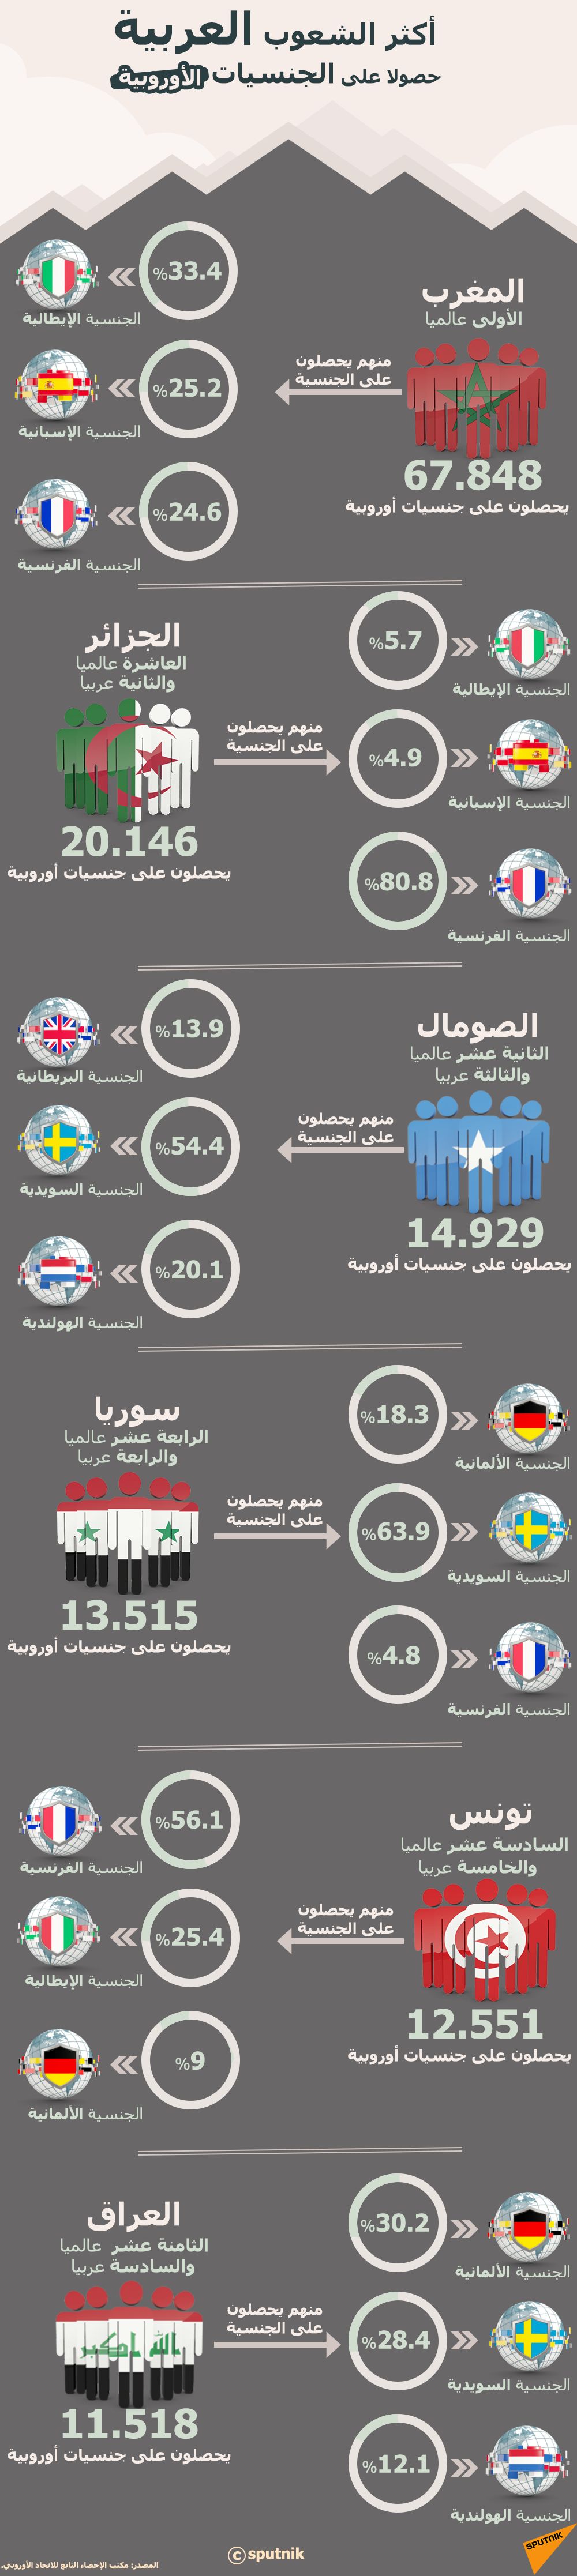 إنفوجرافيك - أكثر الشعوب العربية حصولا على الجنسيات الأوروبية